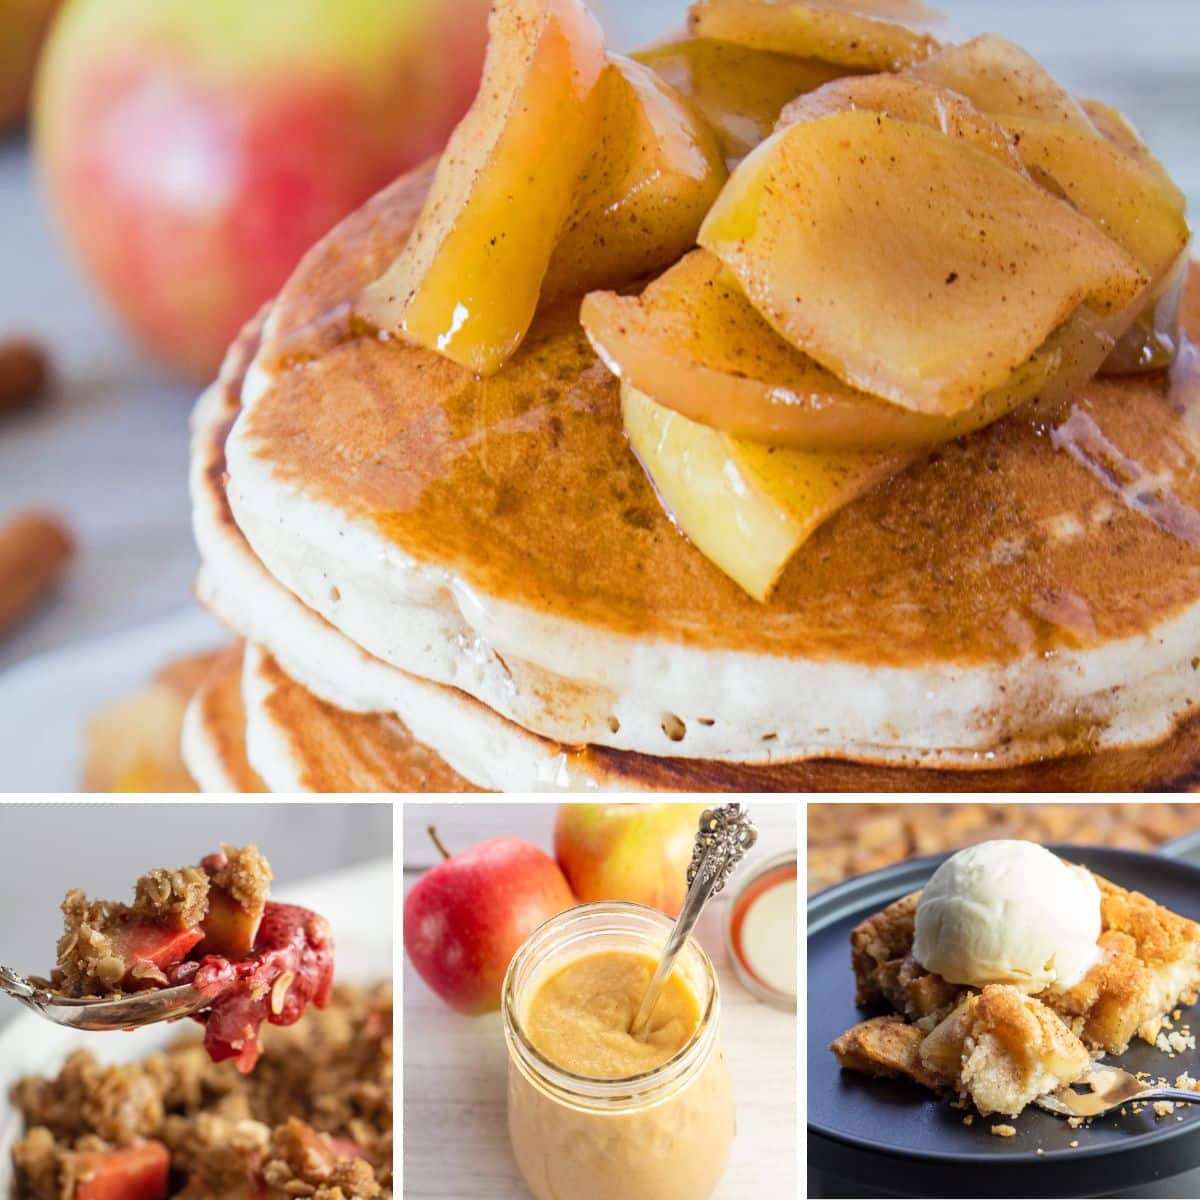 Nejlepší recepty na jablka, které si můžete připravit a užít si kterýkoli den v týdnu, se 4 recepty v kolážovém obrázku.